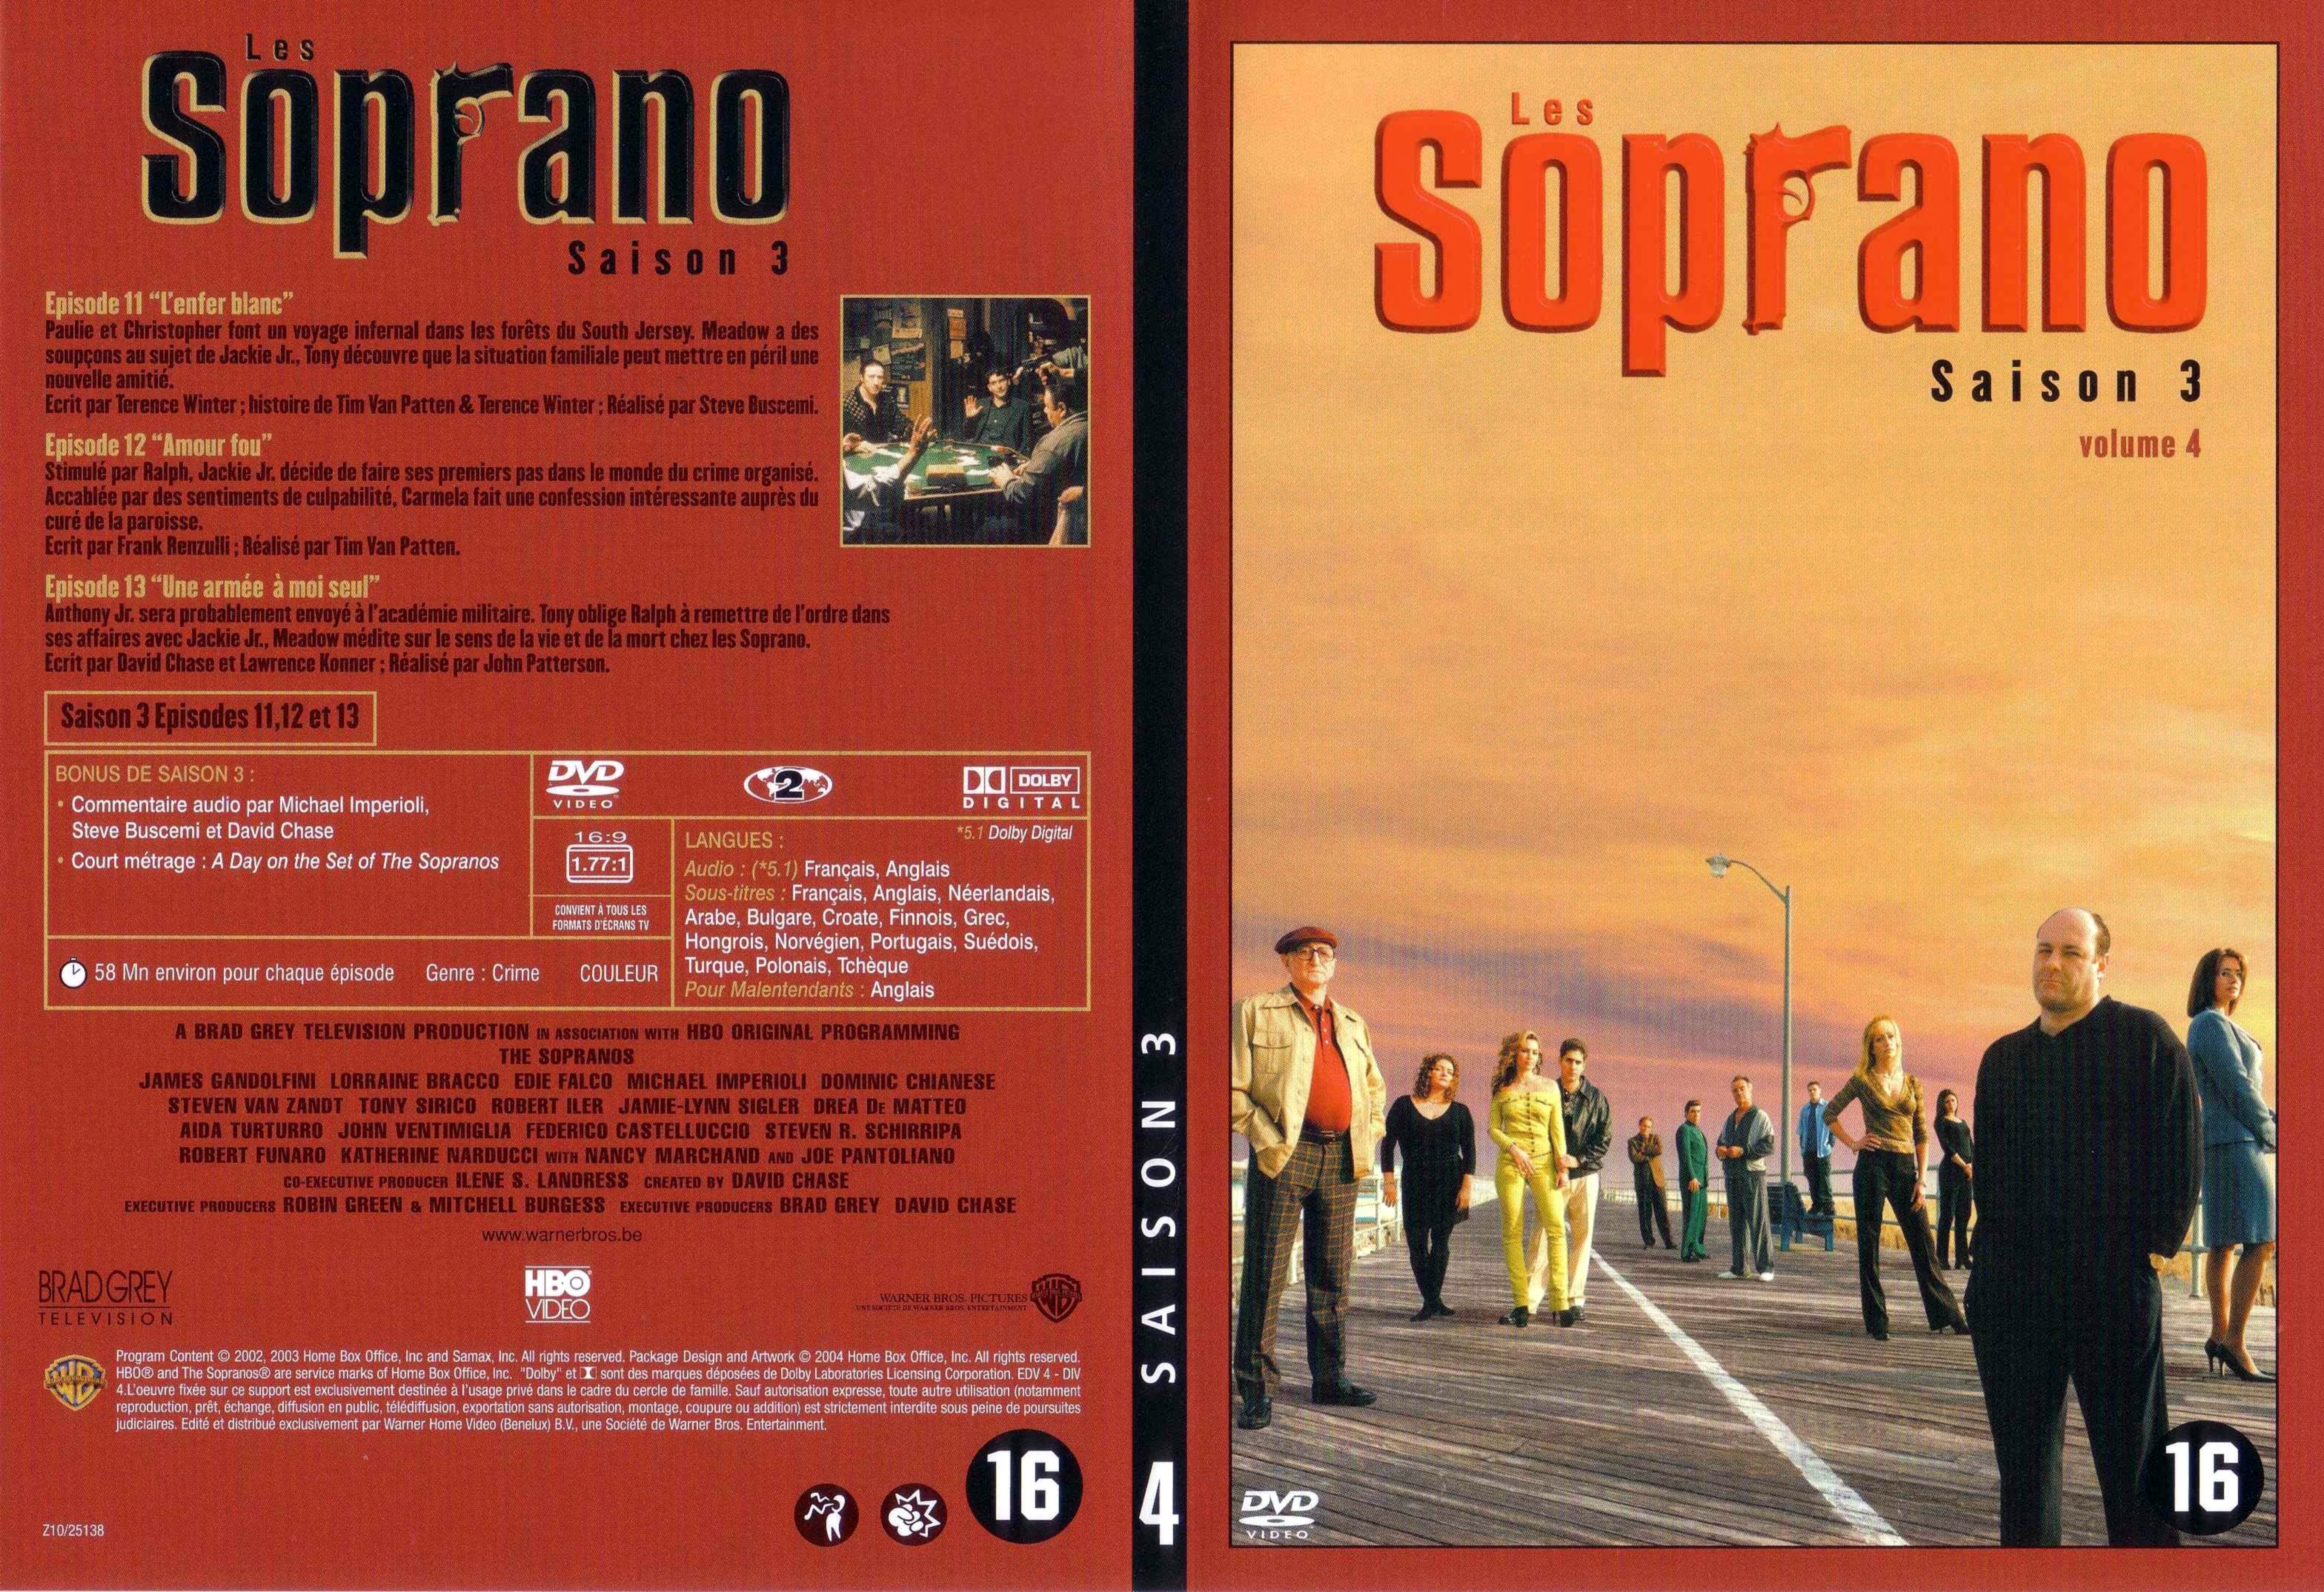 Jaquette DVD Les Soprano saison 3 DVD 4